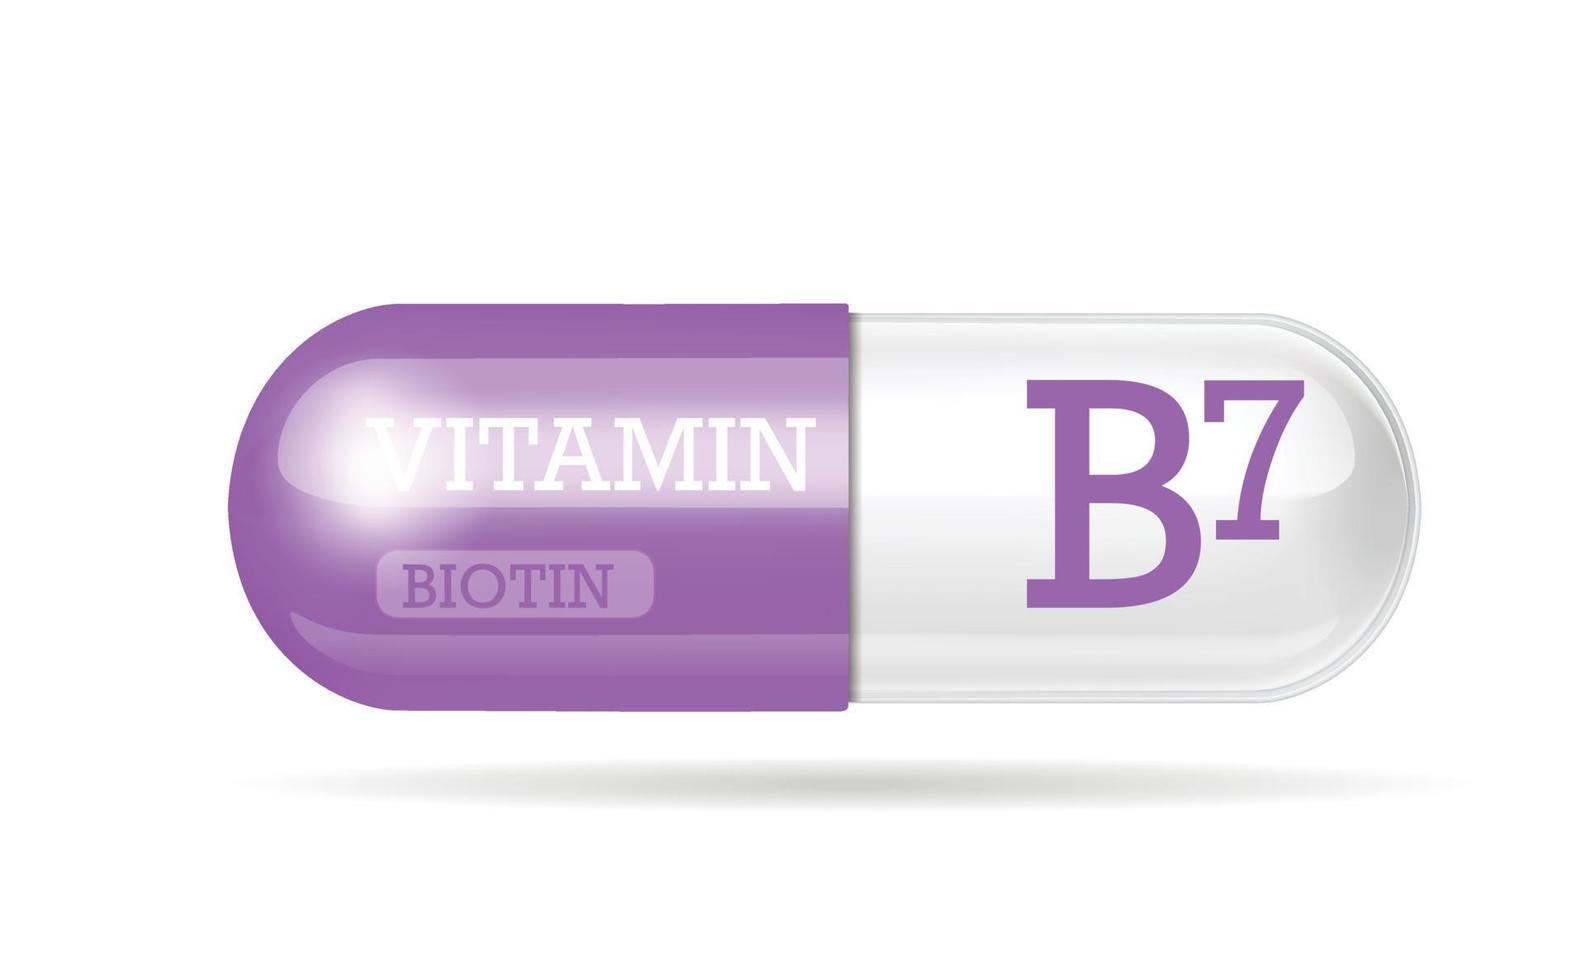 capsule de vitamine b7, thiamine, structure violette, blanche. Complexe de vitamines 3d avec formule chimique. soins personnels, concept de beauté, capsule transparente de pilule. concept d'entreprise de drogue. vecteur